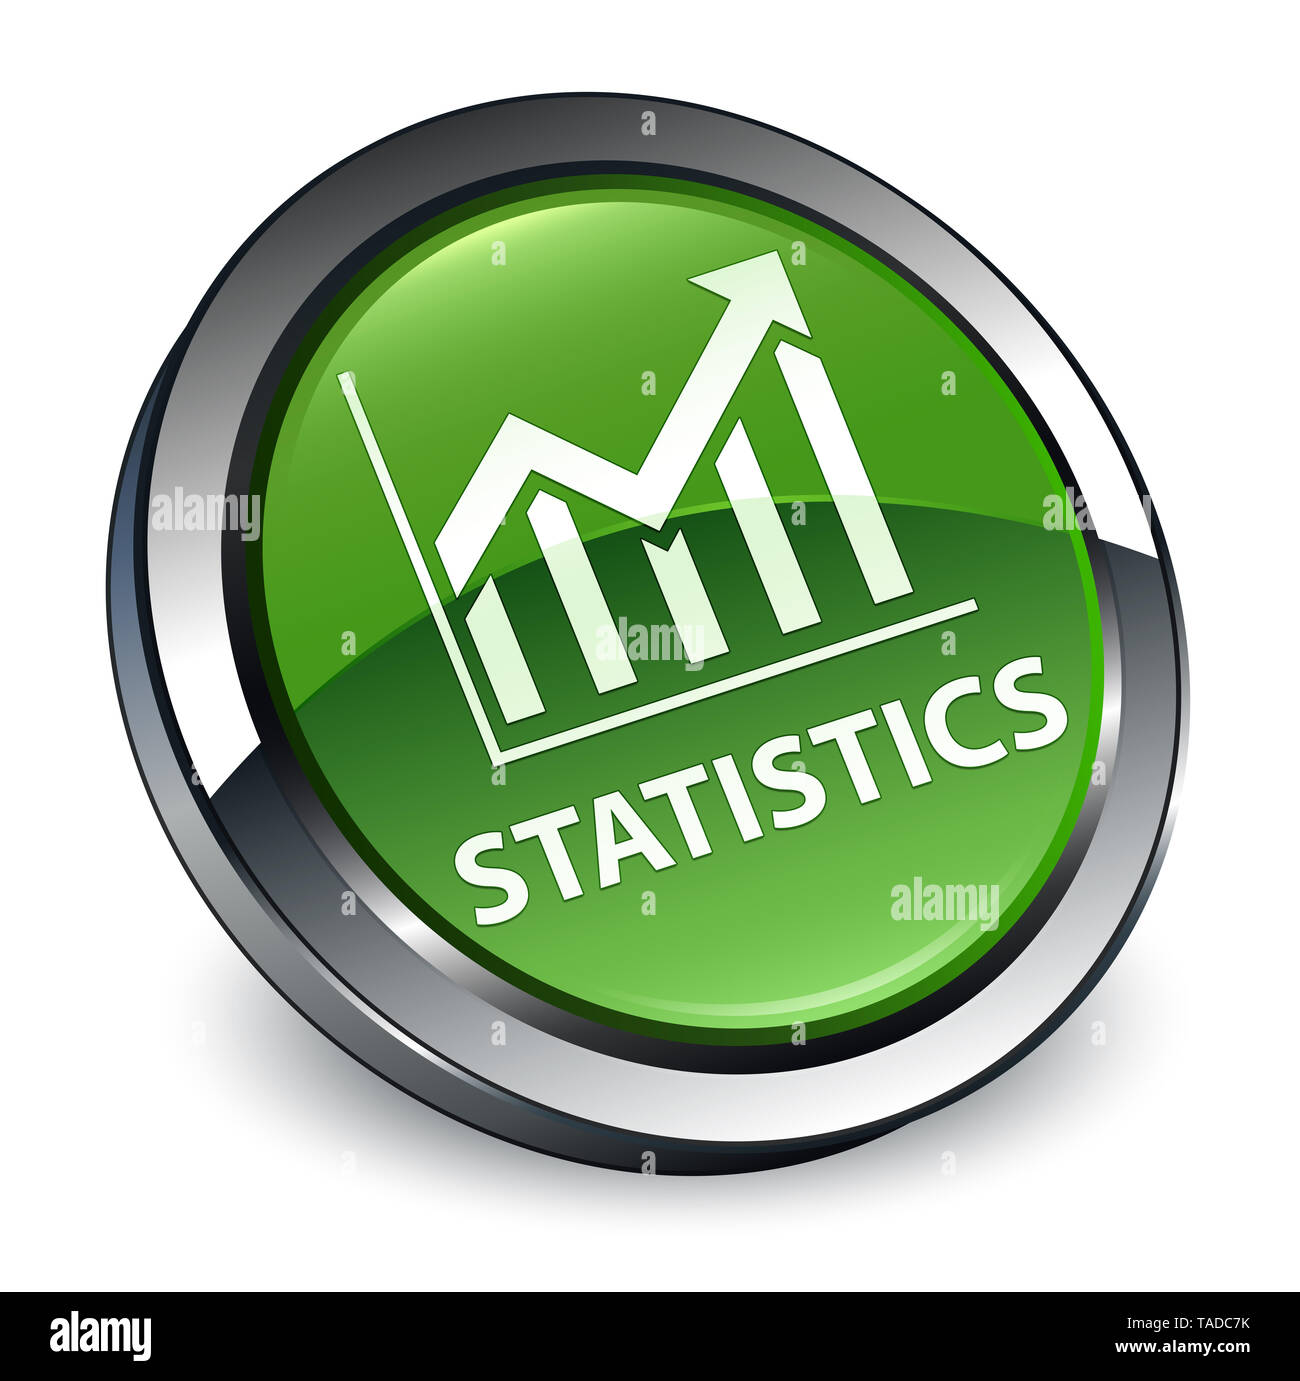 Statistiche isolati su 3d soft verde pulsante rotondo illustrazione astratta Foto Stock